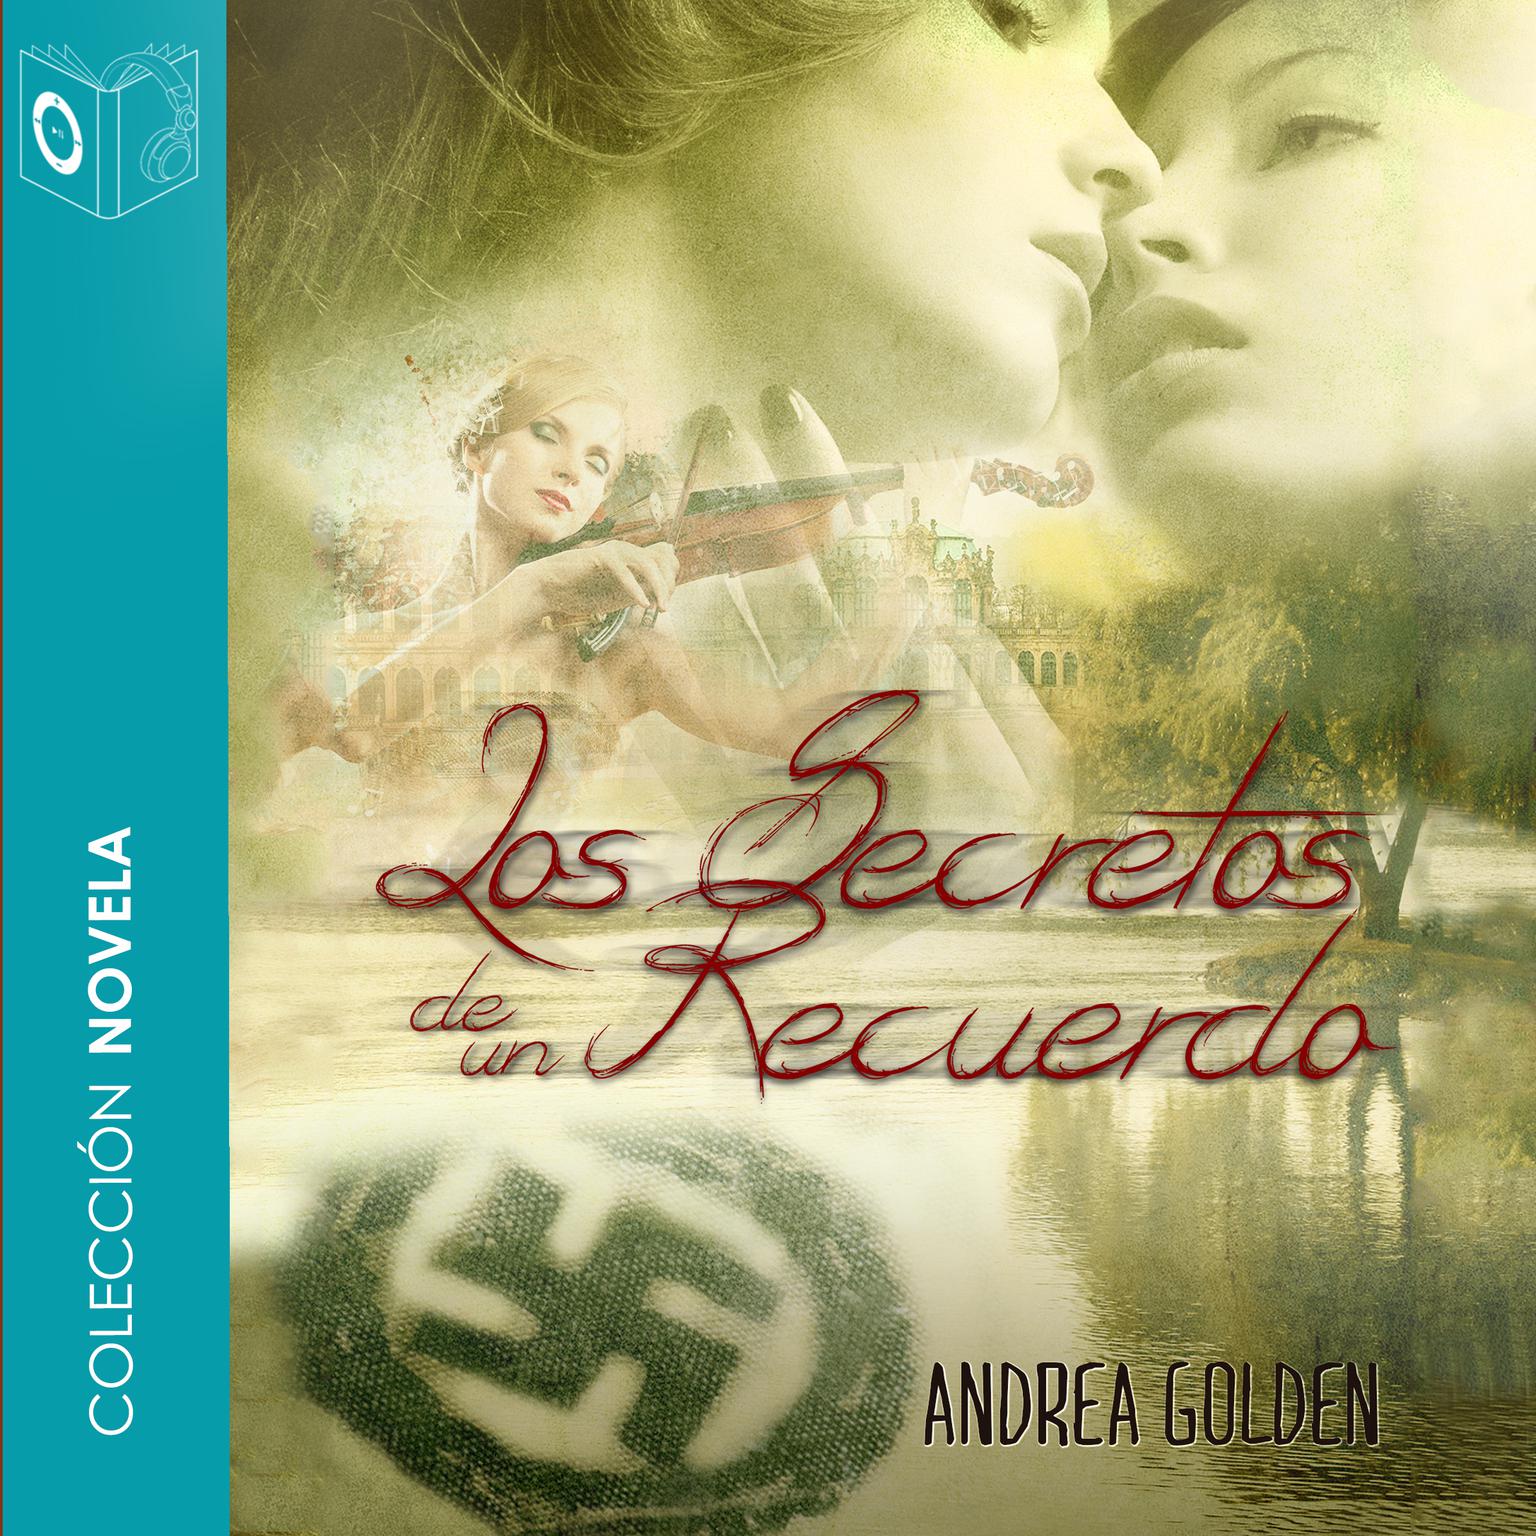 Los secretos de un recuerdo Audiobook, by Andrea Golden